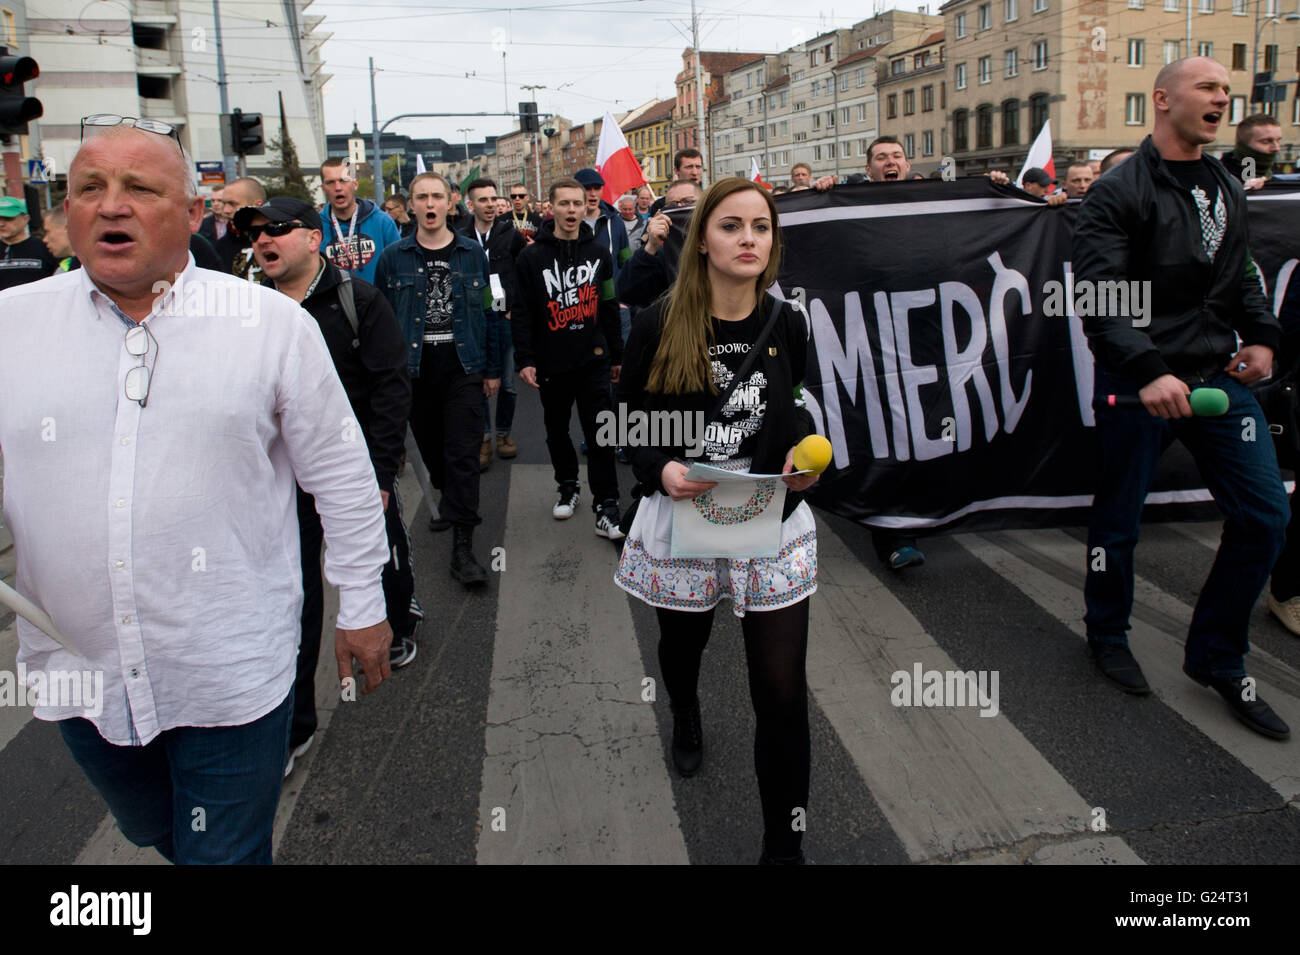 Wroclaw, Polonia. El 1 de mayo de 2016. Los miembros de la ONR (Campamento nacional Radical) marzo en calles de Wroclaw. Foto de stock